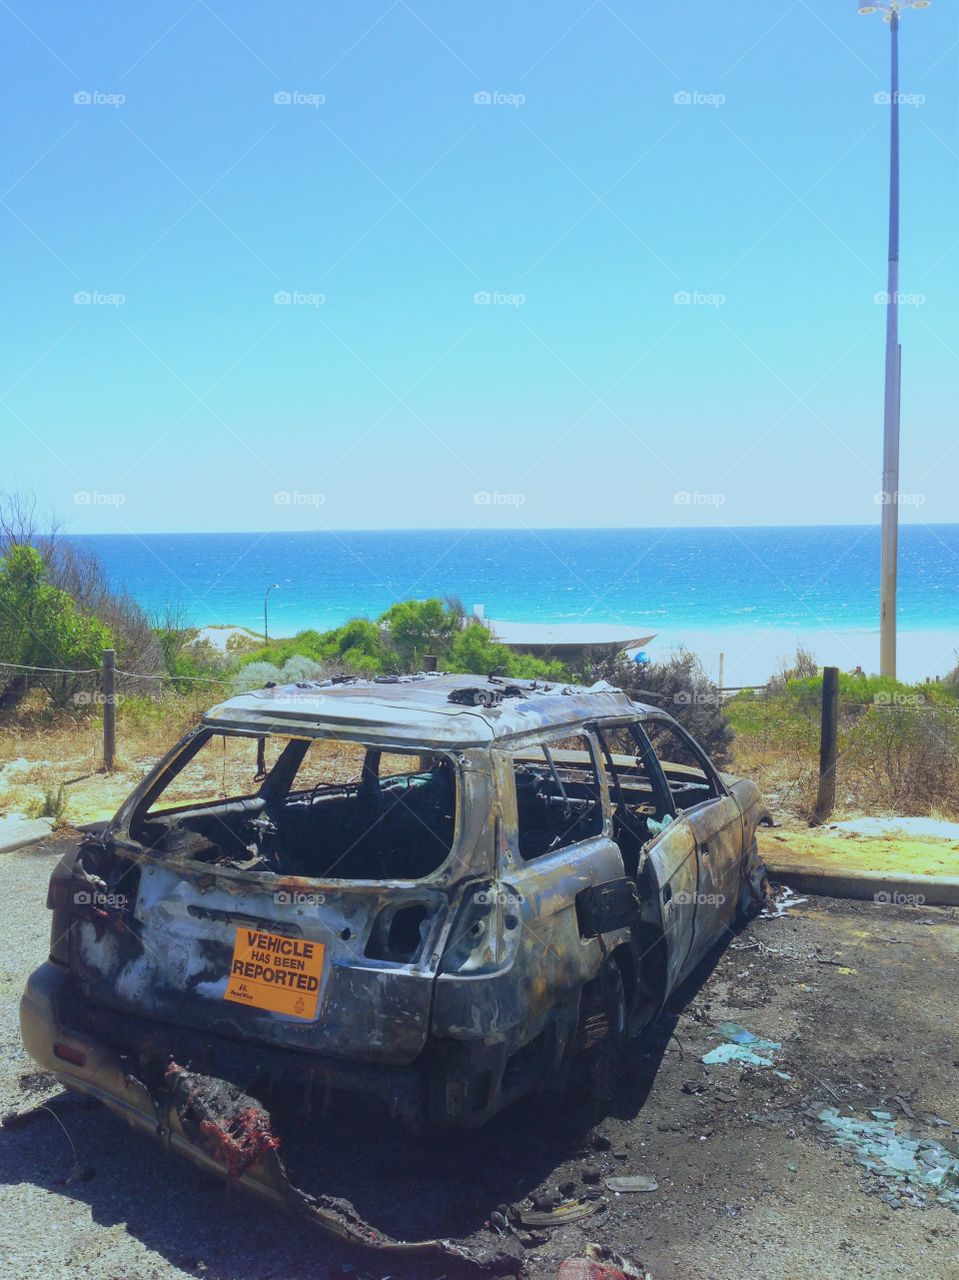 Burnt out car on beach. City Beach, Western Australia